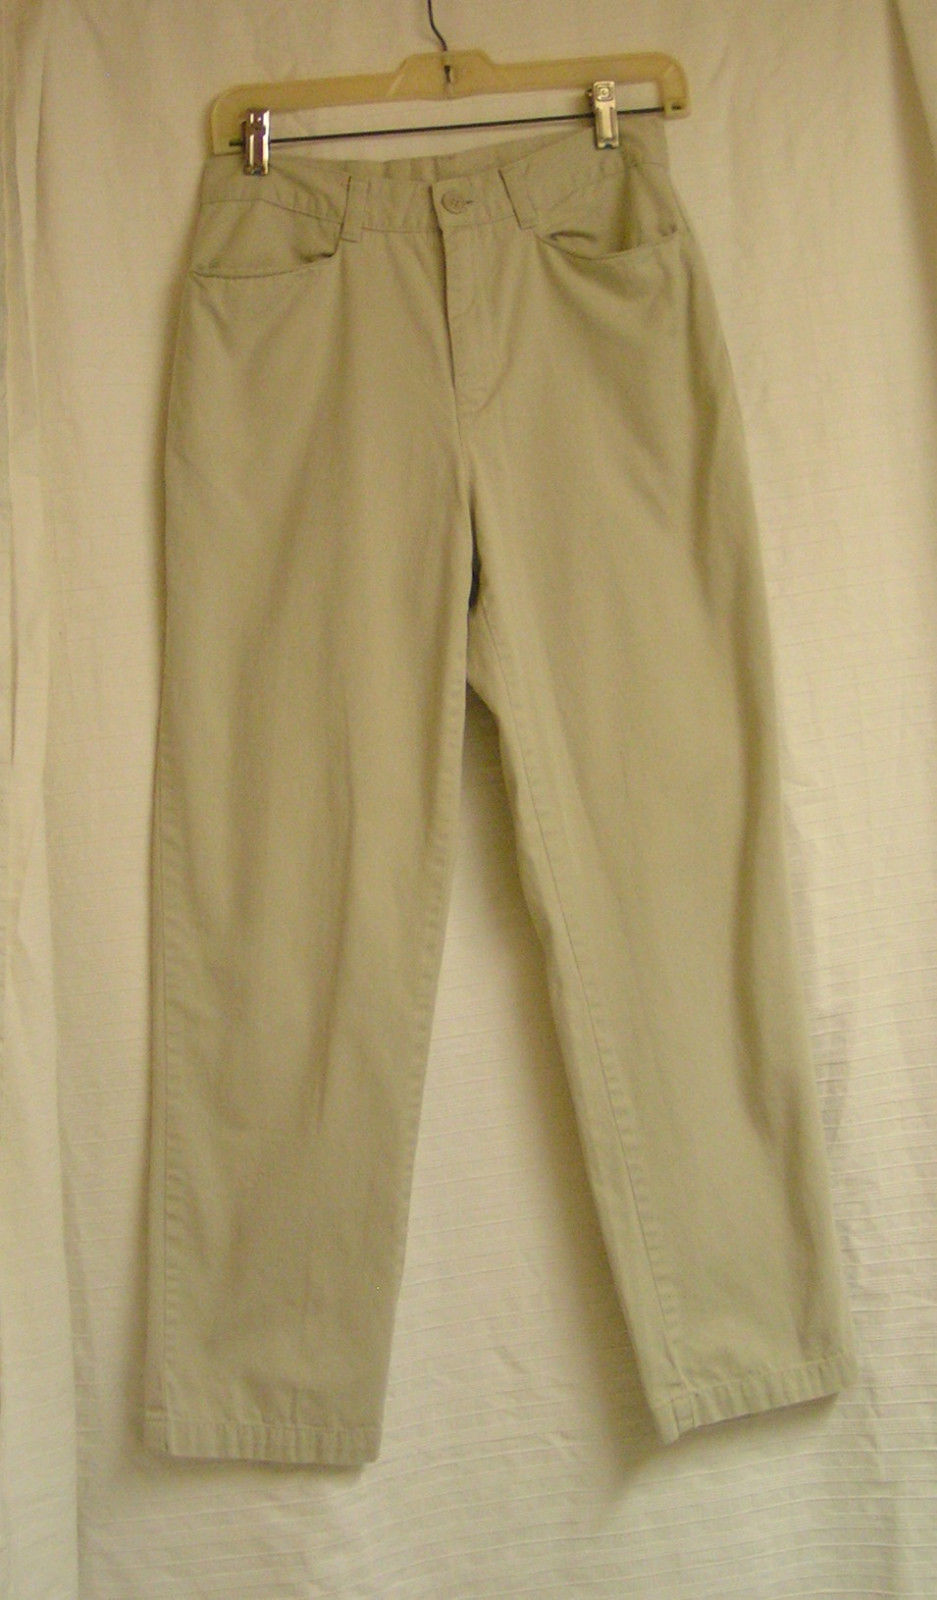 100% Cotton Tan Old Navy Pants size 6A - Pants